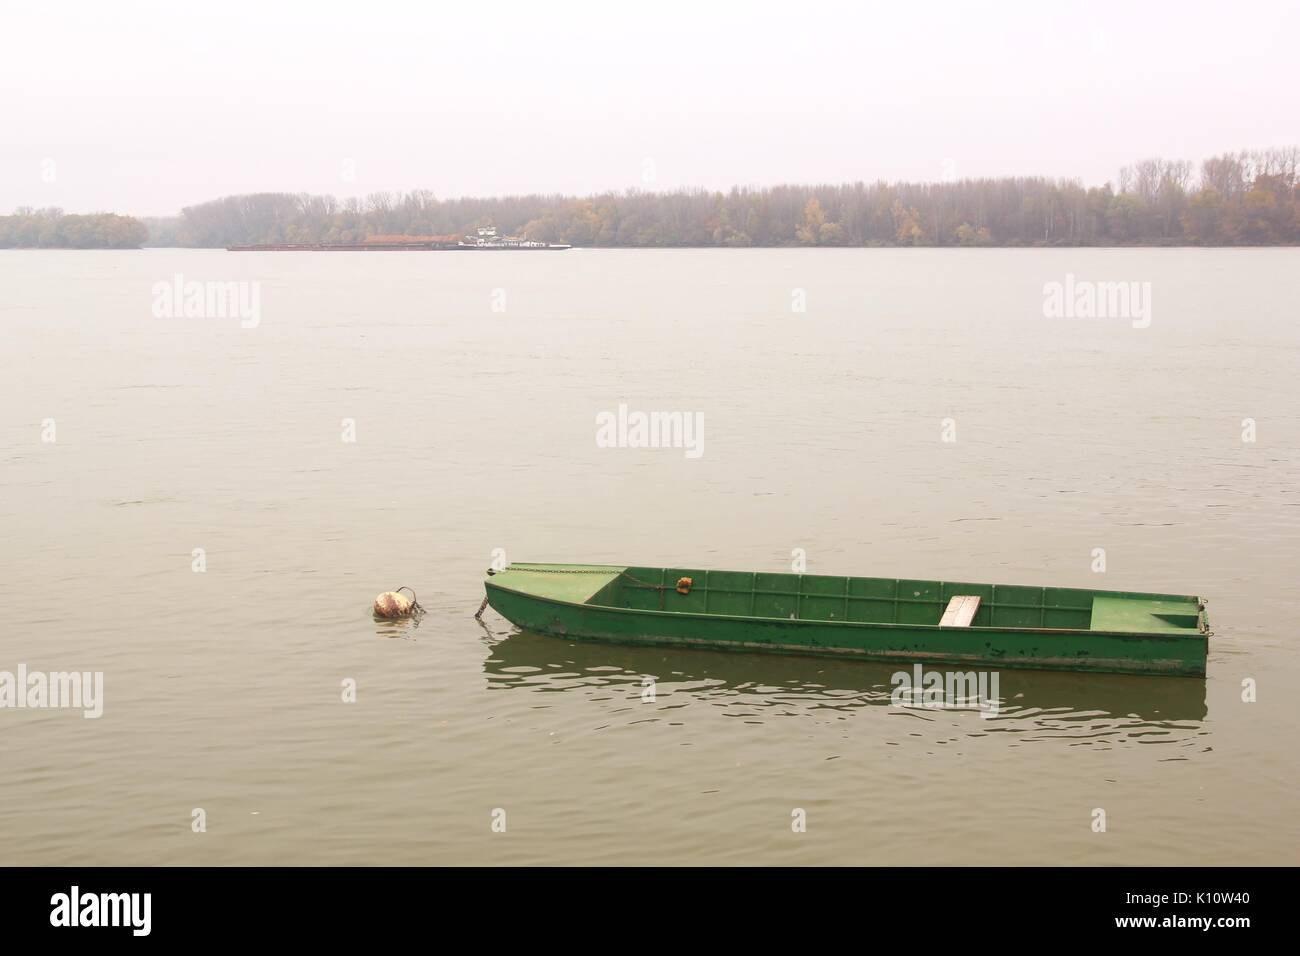 River Danube in Croatia. Stock Photo